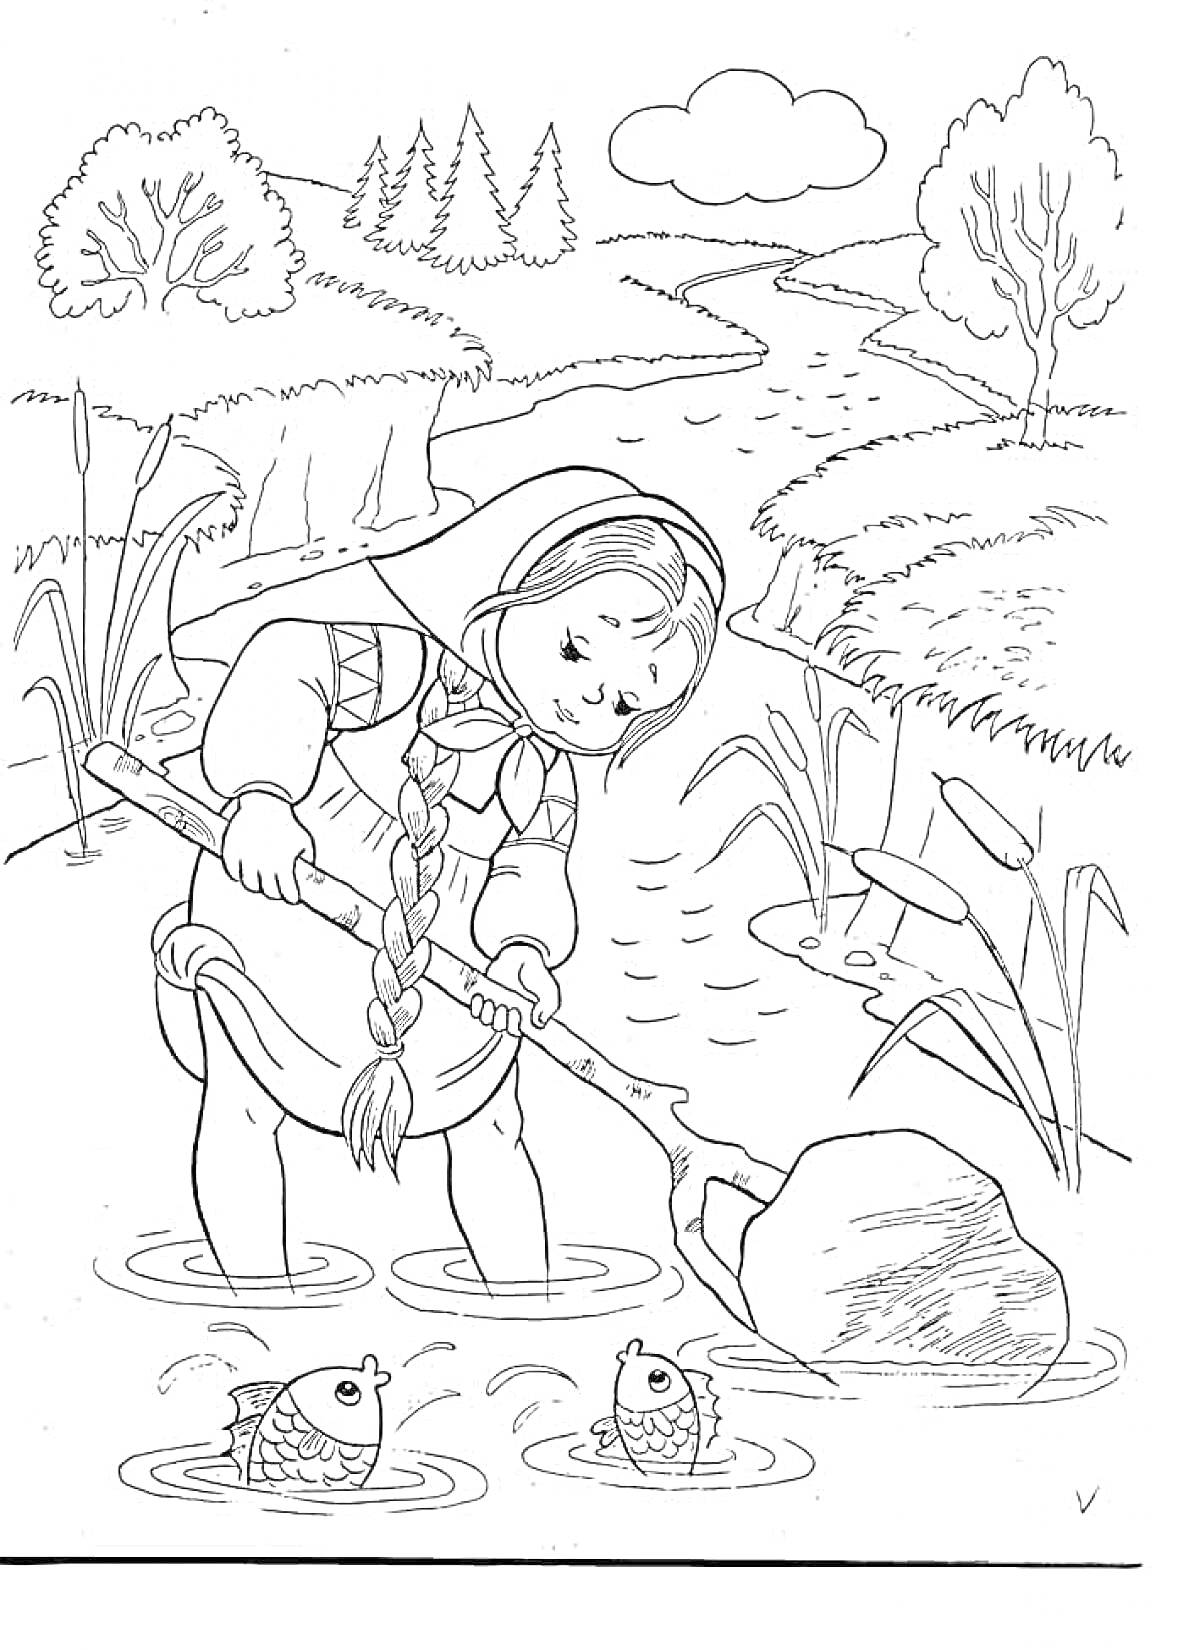 Девочка с косой и лопатой в воде, две рыбы, речка, поля, деревья и облако на небе